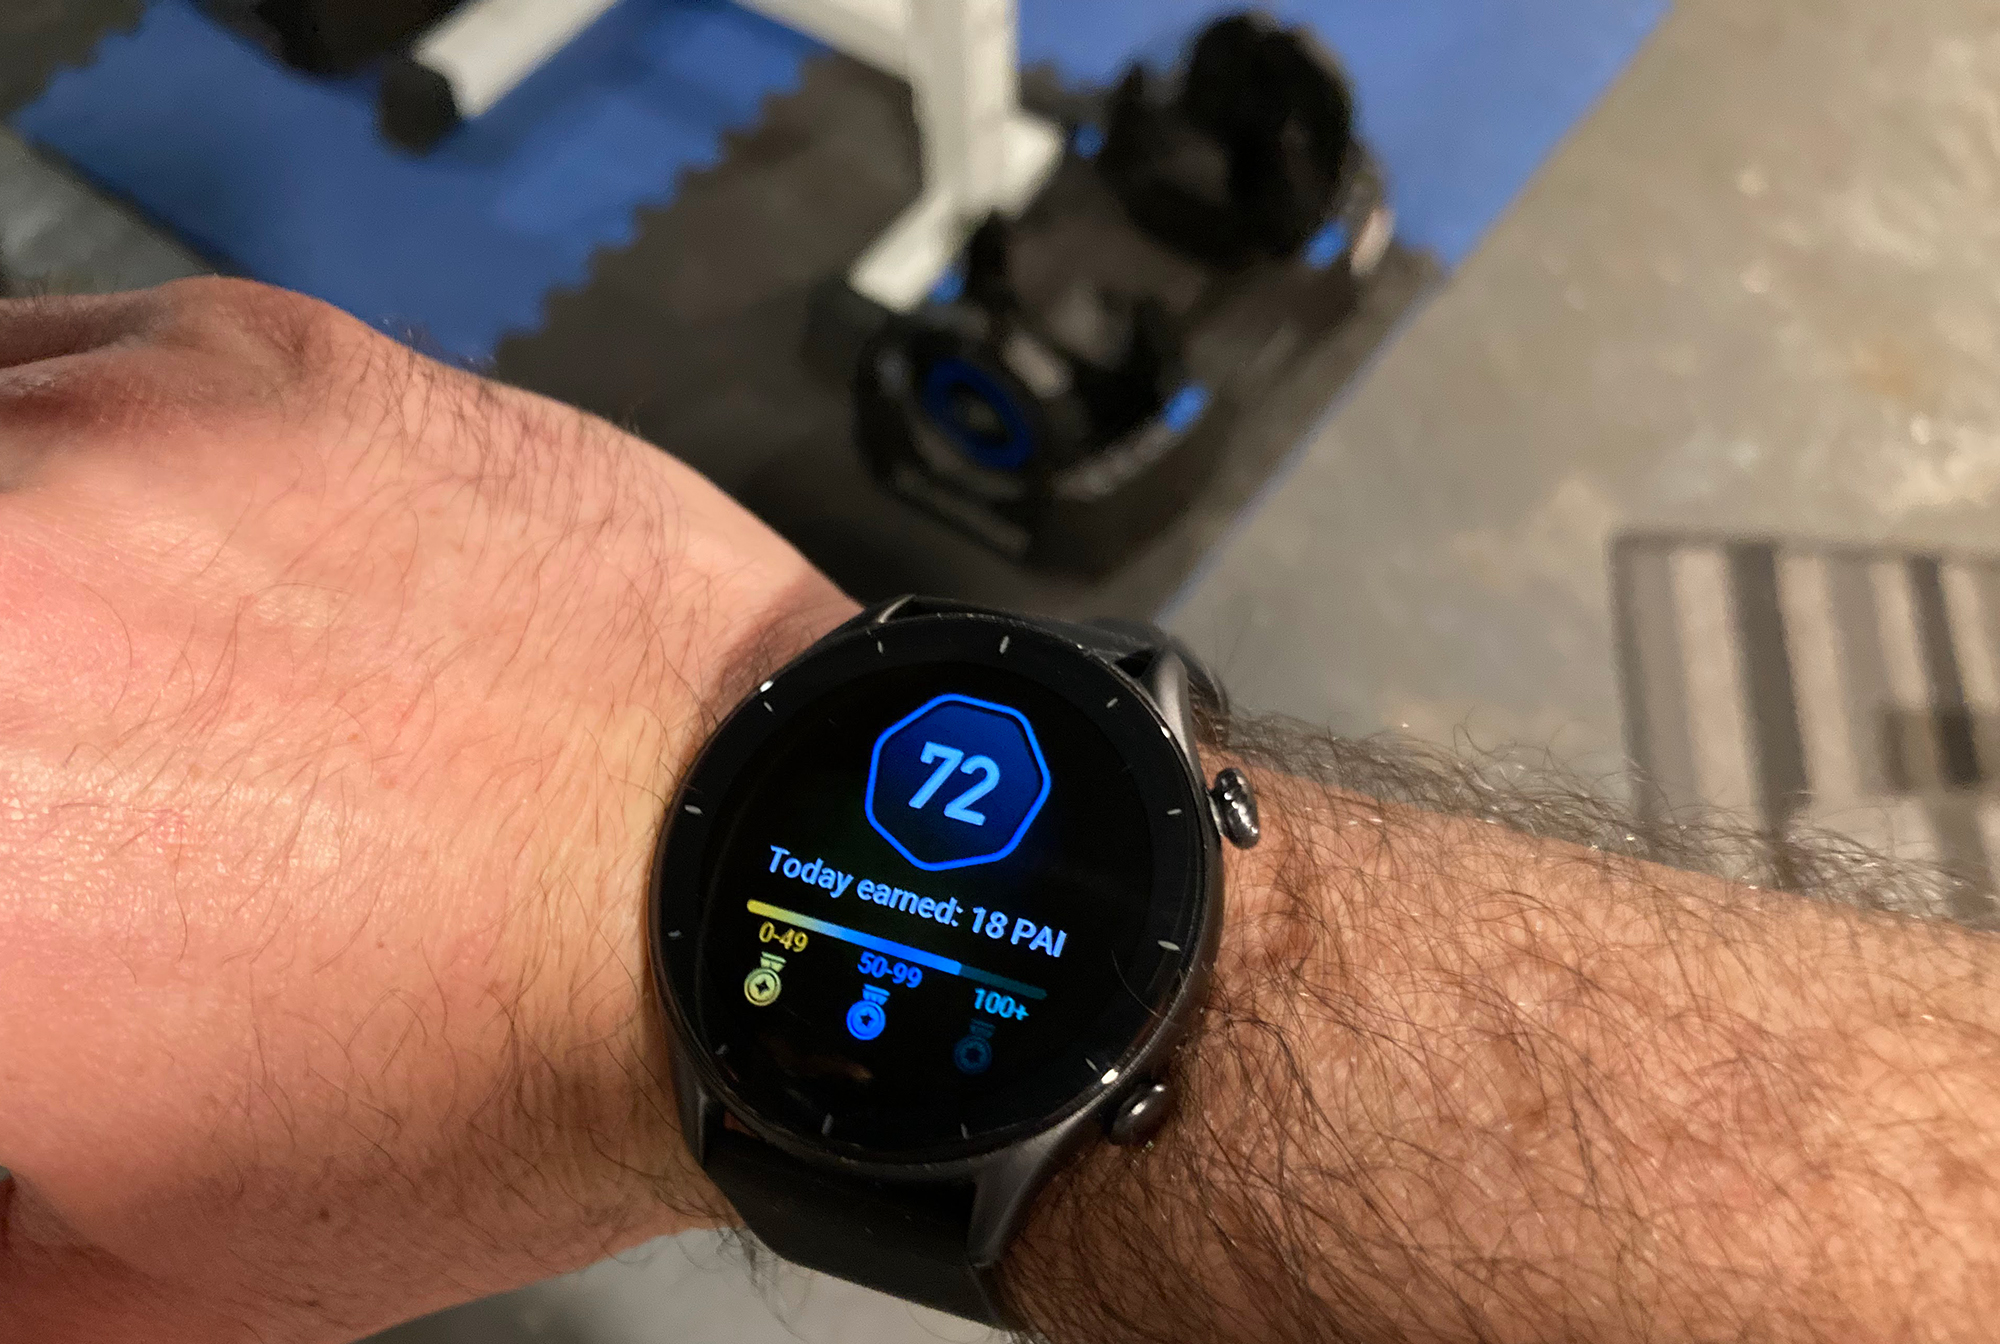 Amazfit GTR 3 Pro Review: A surprisingly excellent smartwatch